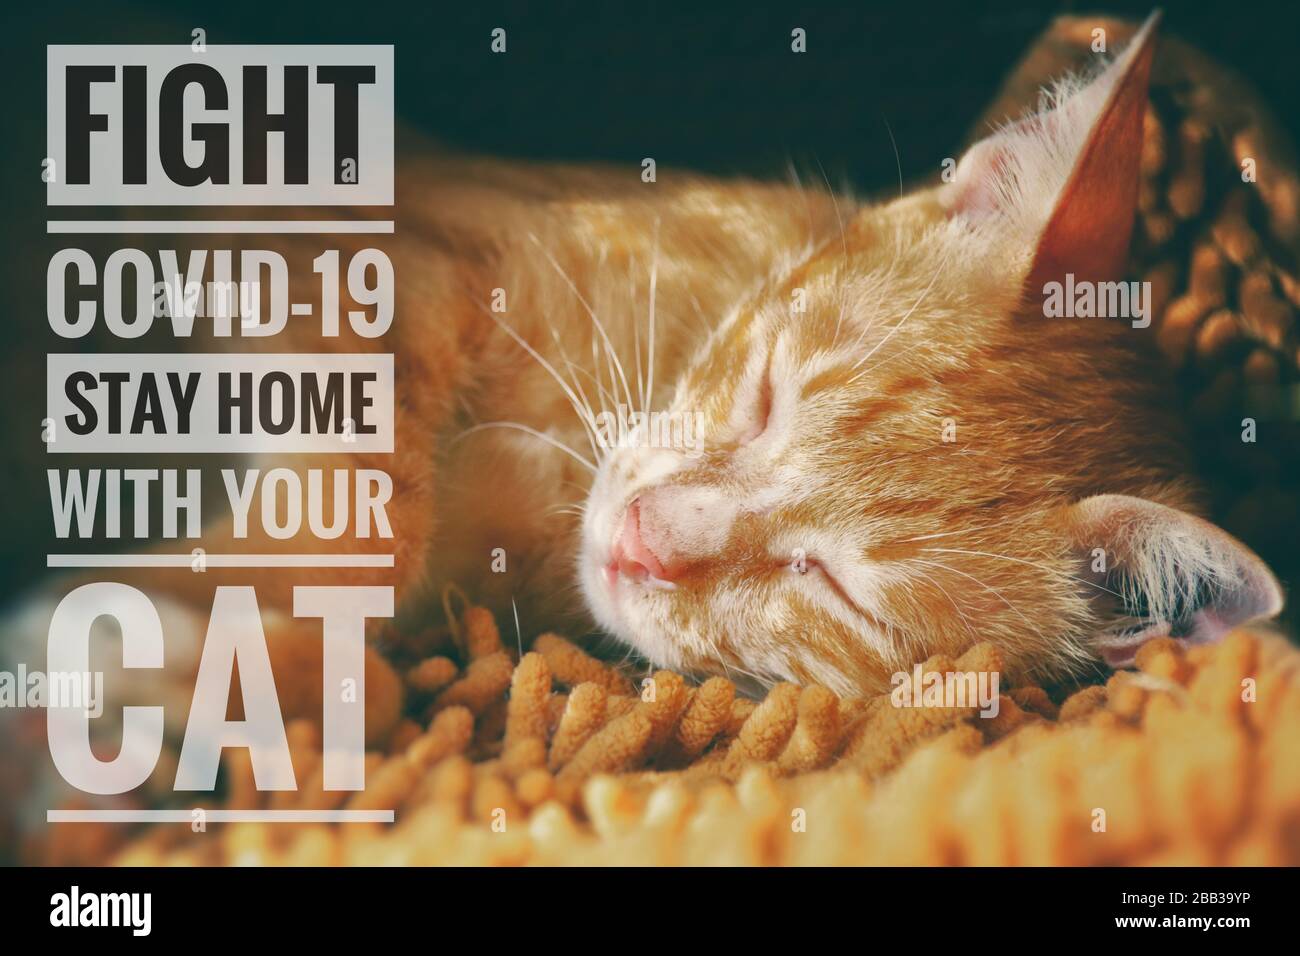 Süße Katze und Botschaft, um mit Ihrer Katze zu Hause zu bleiben und vor dem Kovid-19-Ausbruch sicher zu bleiben Stockfoto